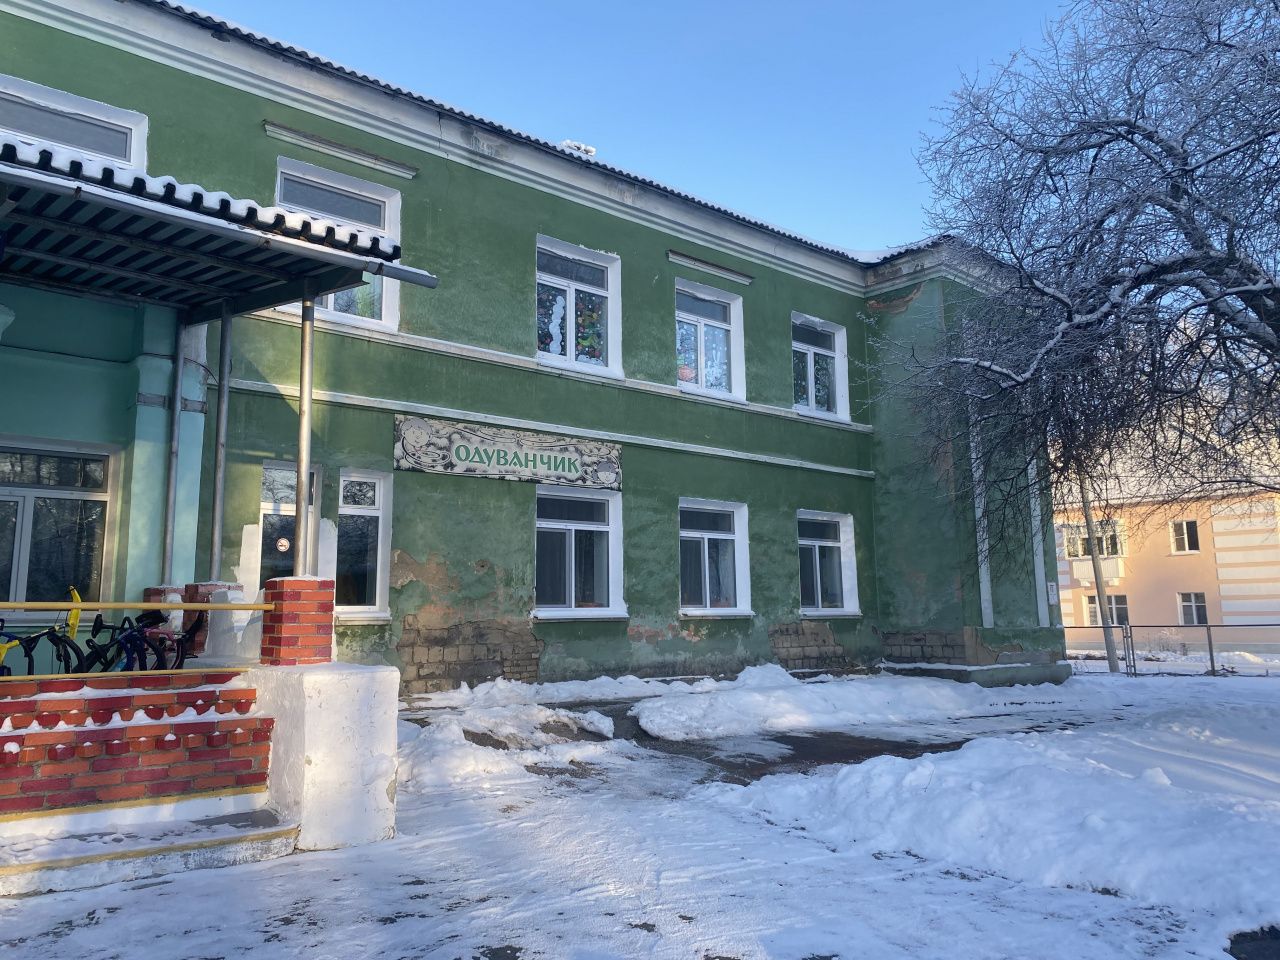 Детский сад "Одуванчик", в котором мерзнут воспитанники, закрывают на ремонт?